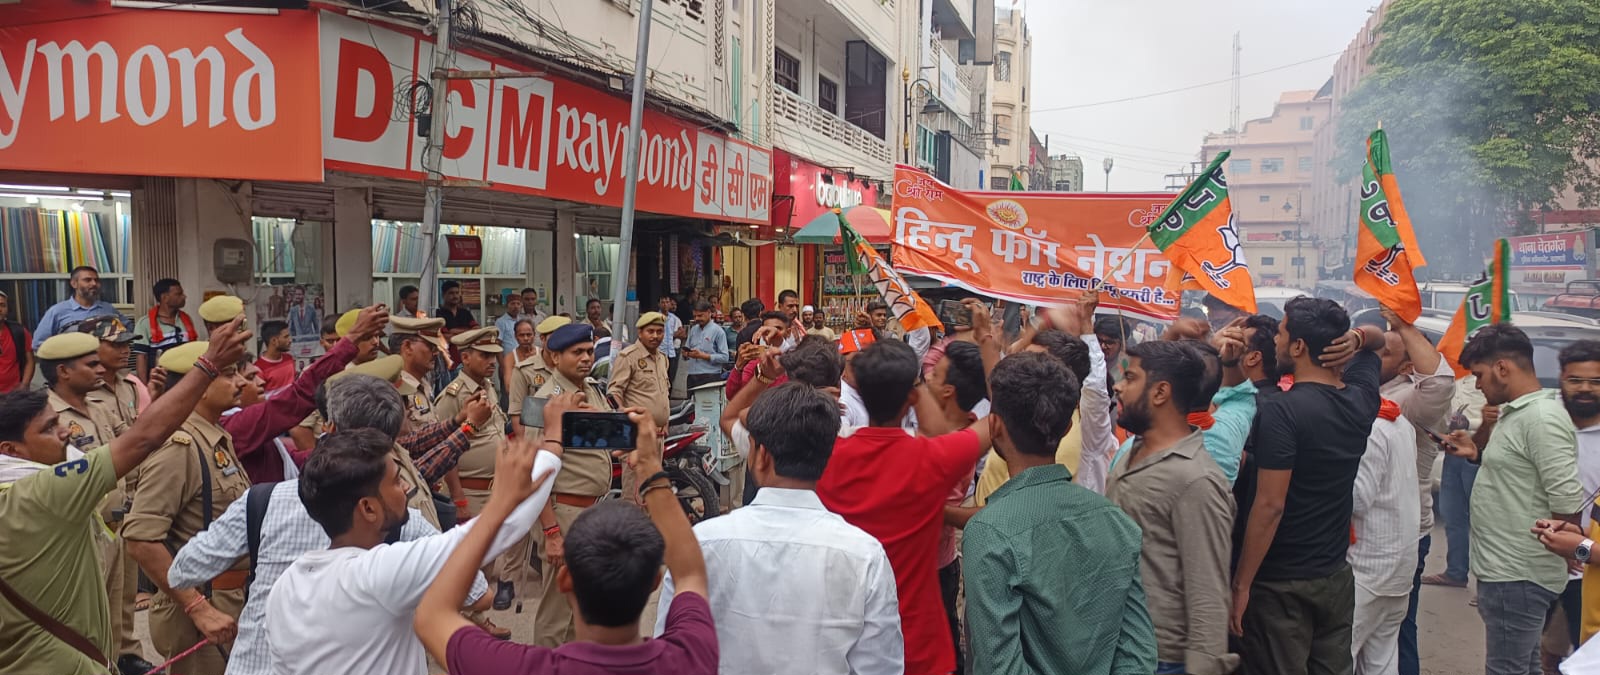 वाराणसी में हिंदू संगठनों ने किया विरोध प्रदर्शन